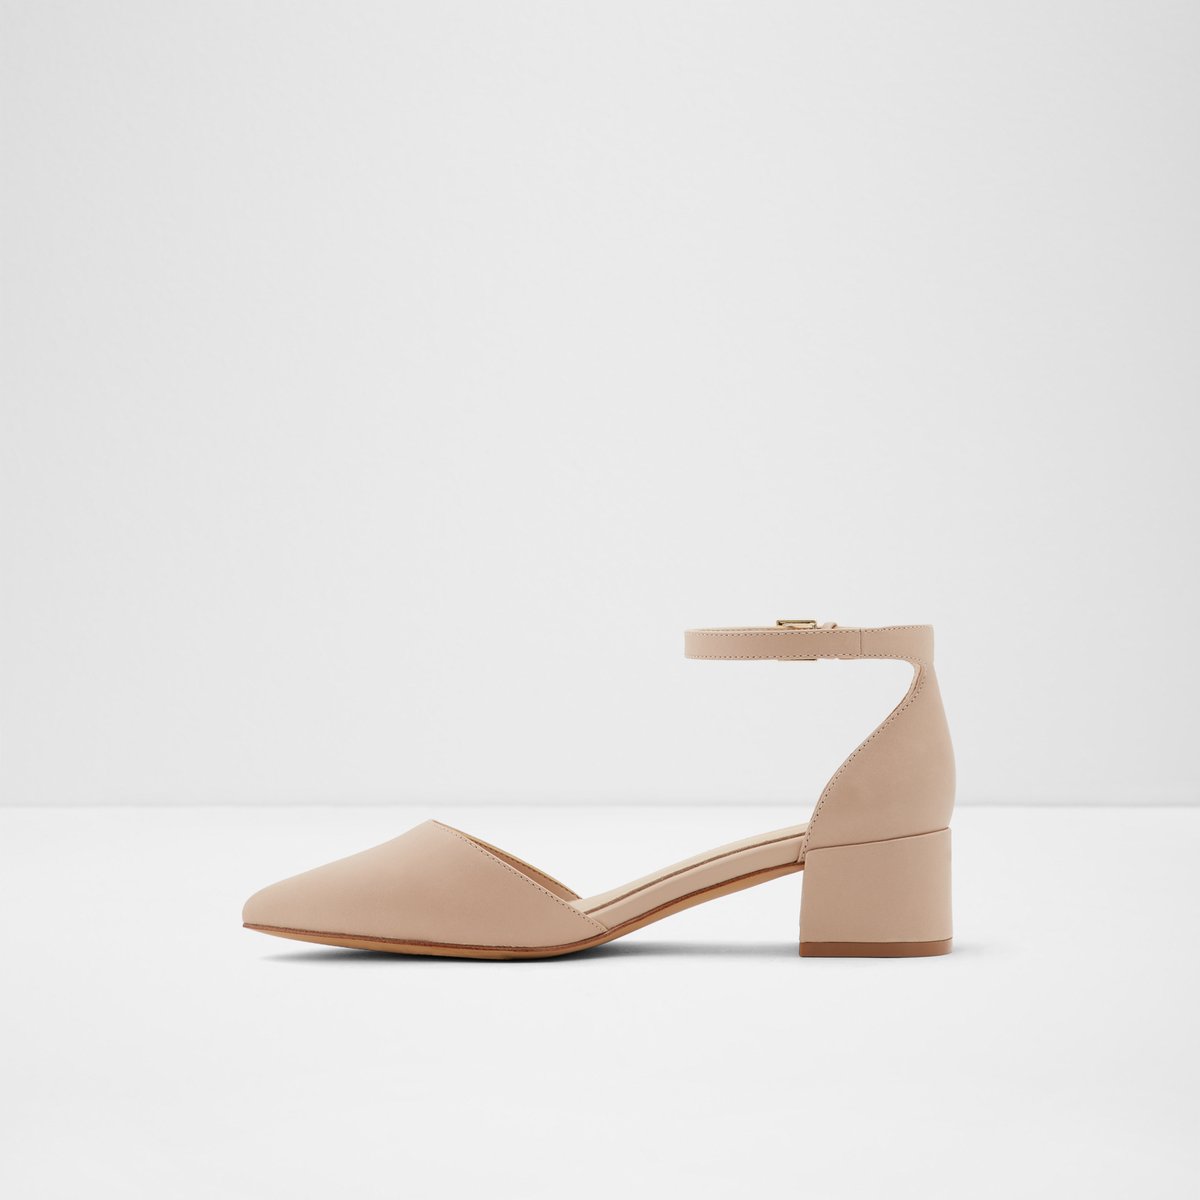 Zulian Bone Women's Low-mid heels | ALDO US